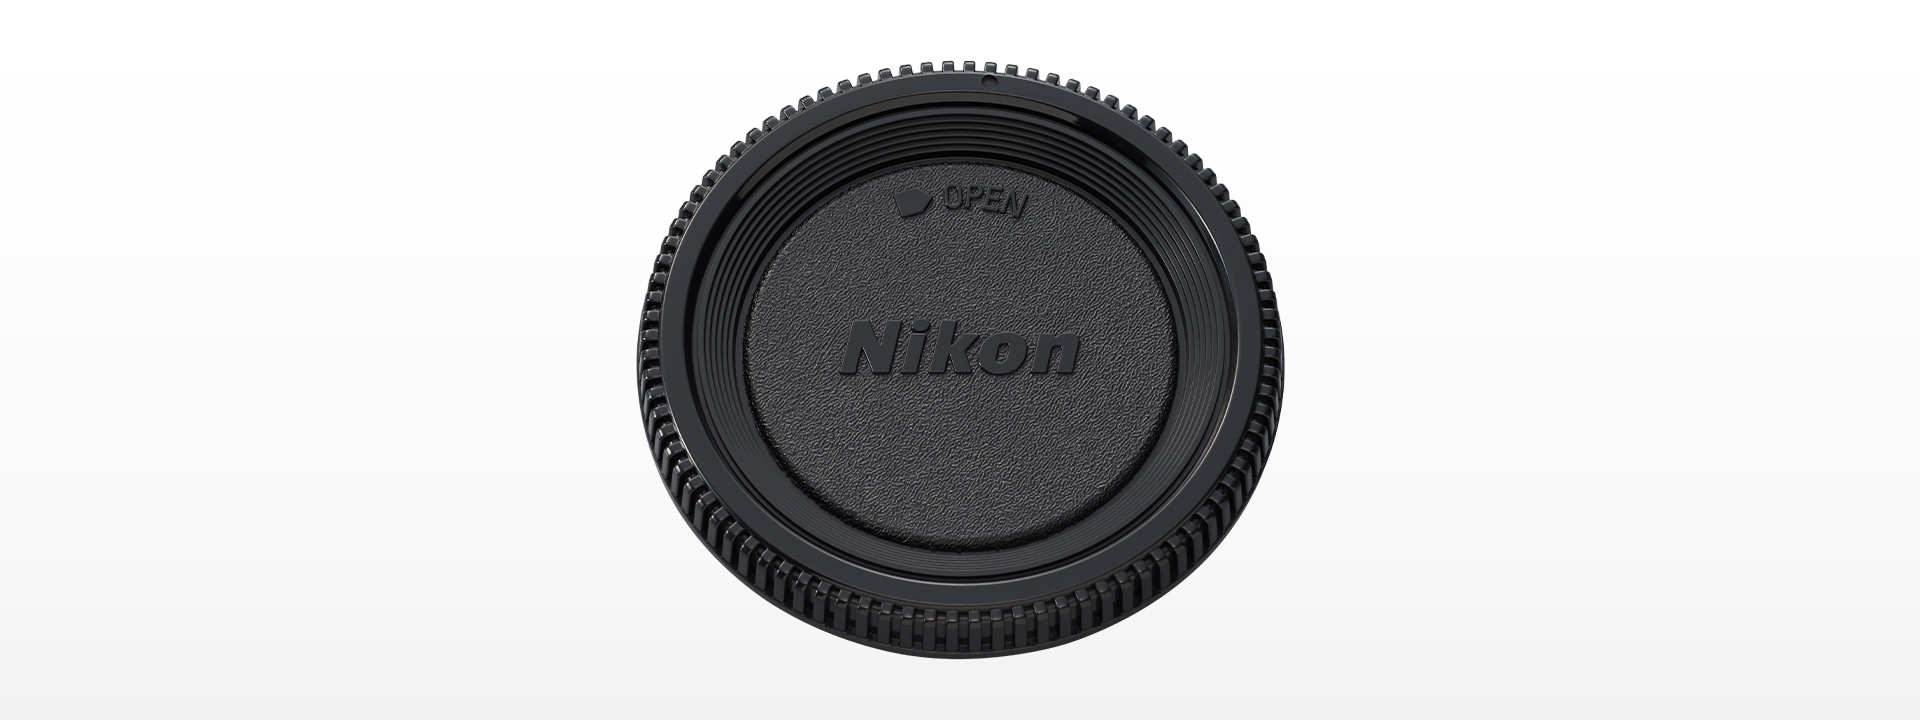 ニコン Nikon ニコン FSA-L2